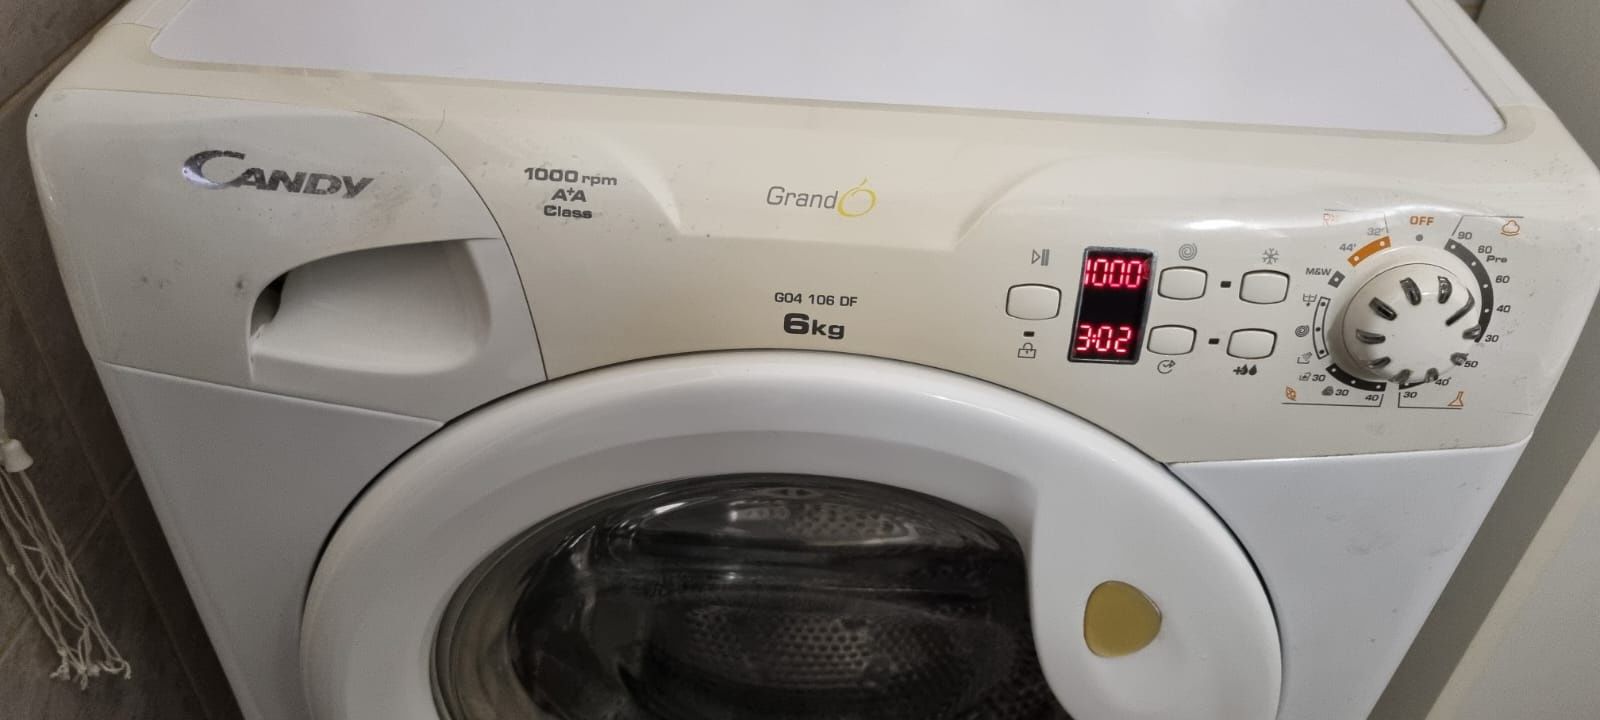 Sprzedam pralkę automatyczną Candy G04 106DF 6kg prania